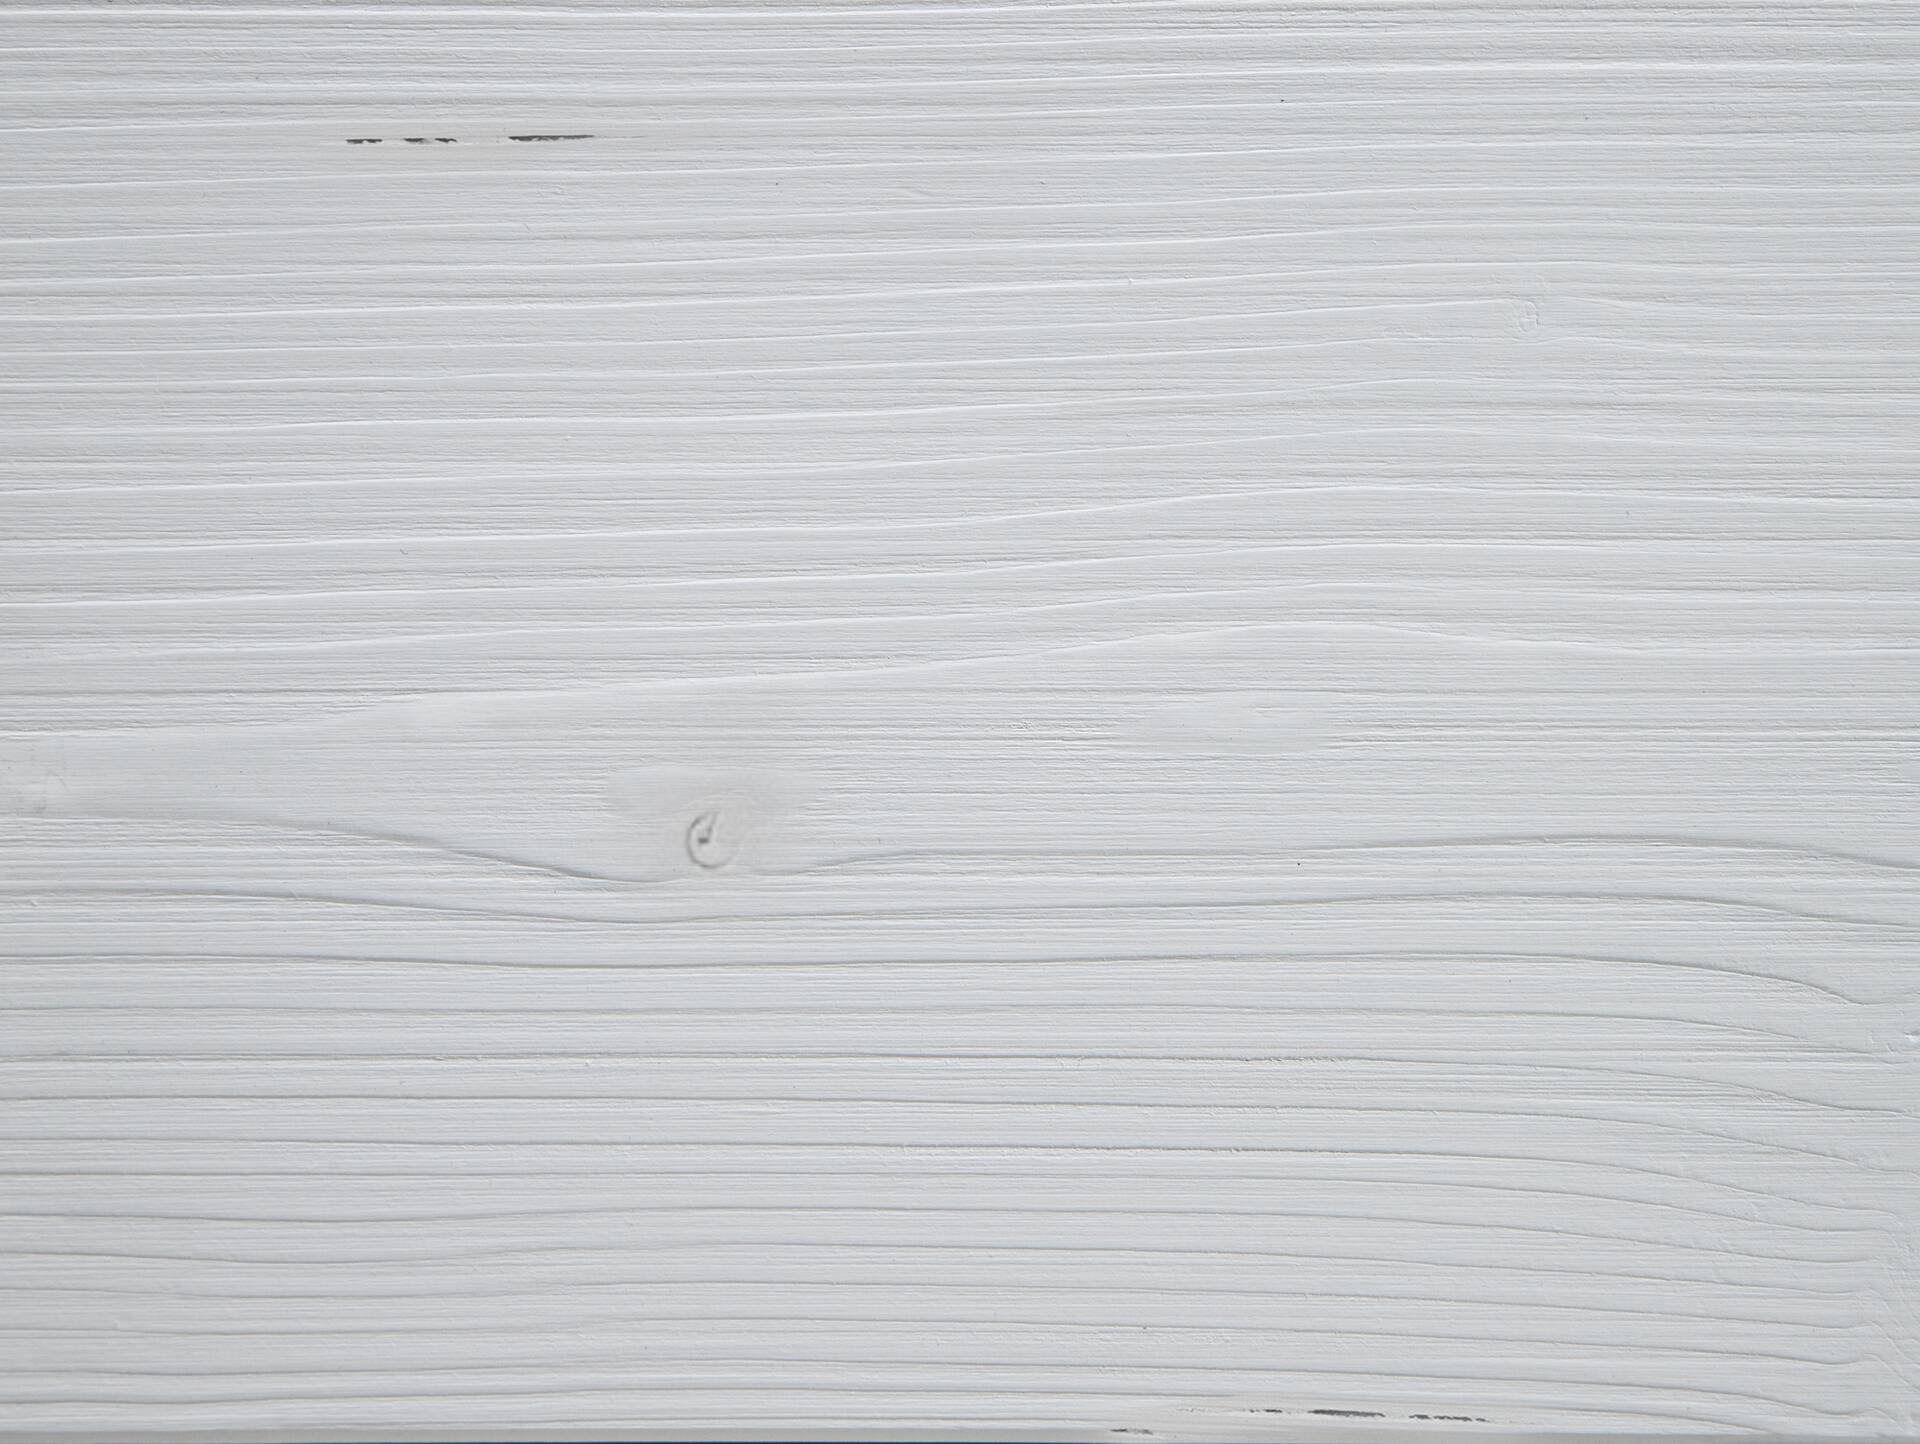 LUKY Bett Metallfuß, mit Polsterkopfteil, Material Massivholz, Fichte massiv 180 x 220 cm | weiss | Kunstleder Braun